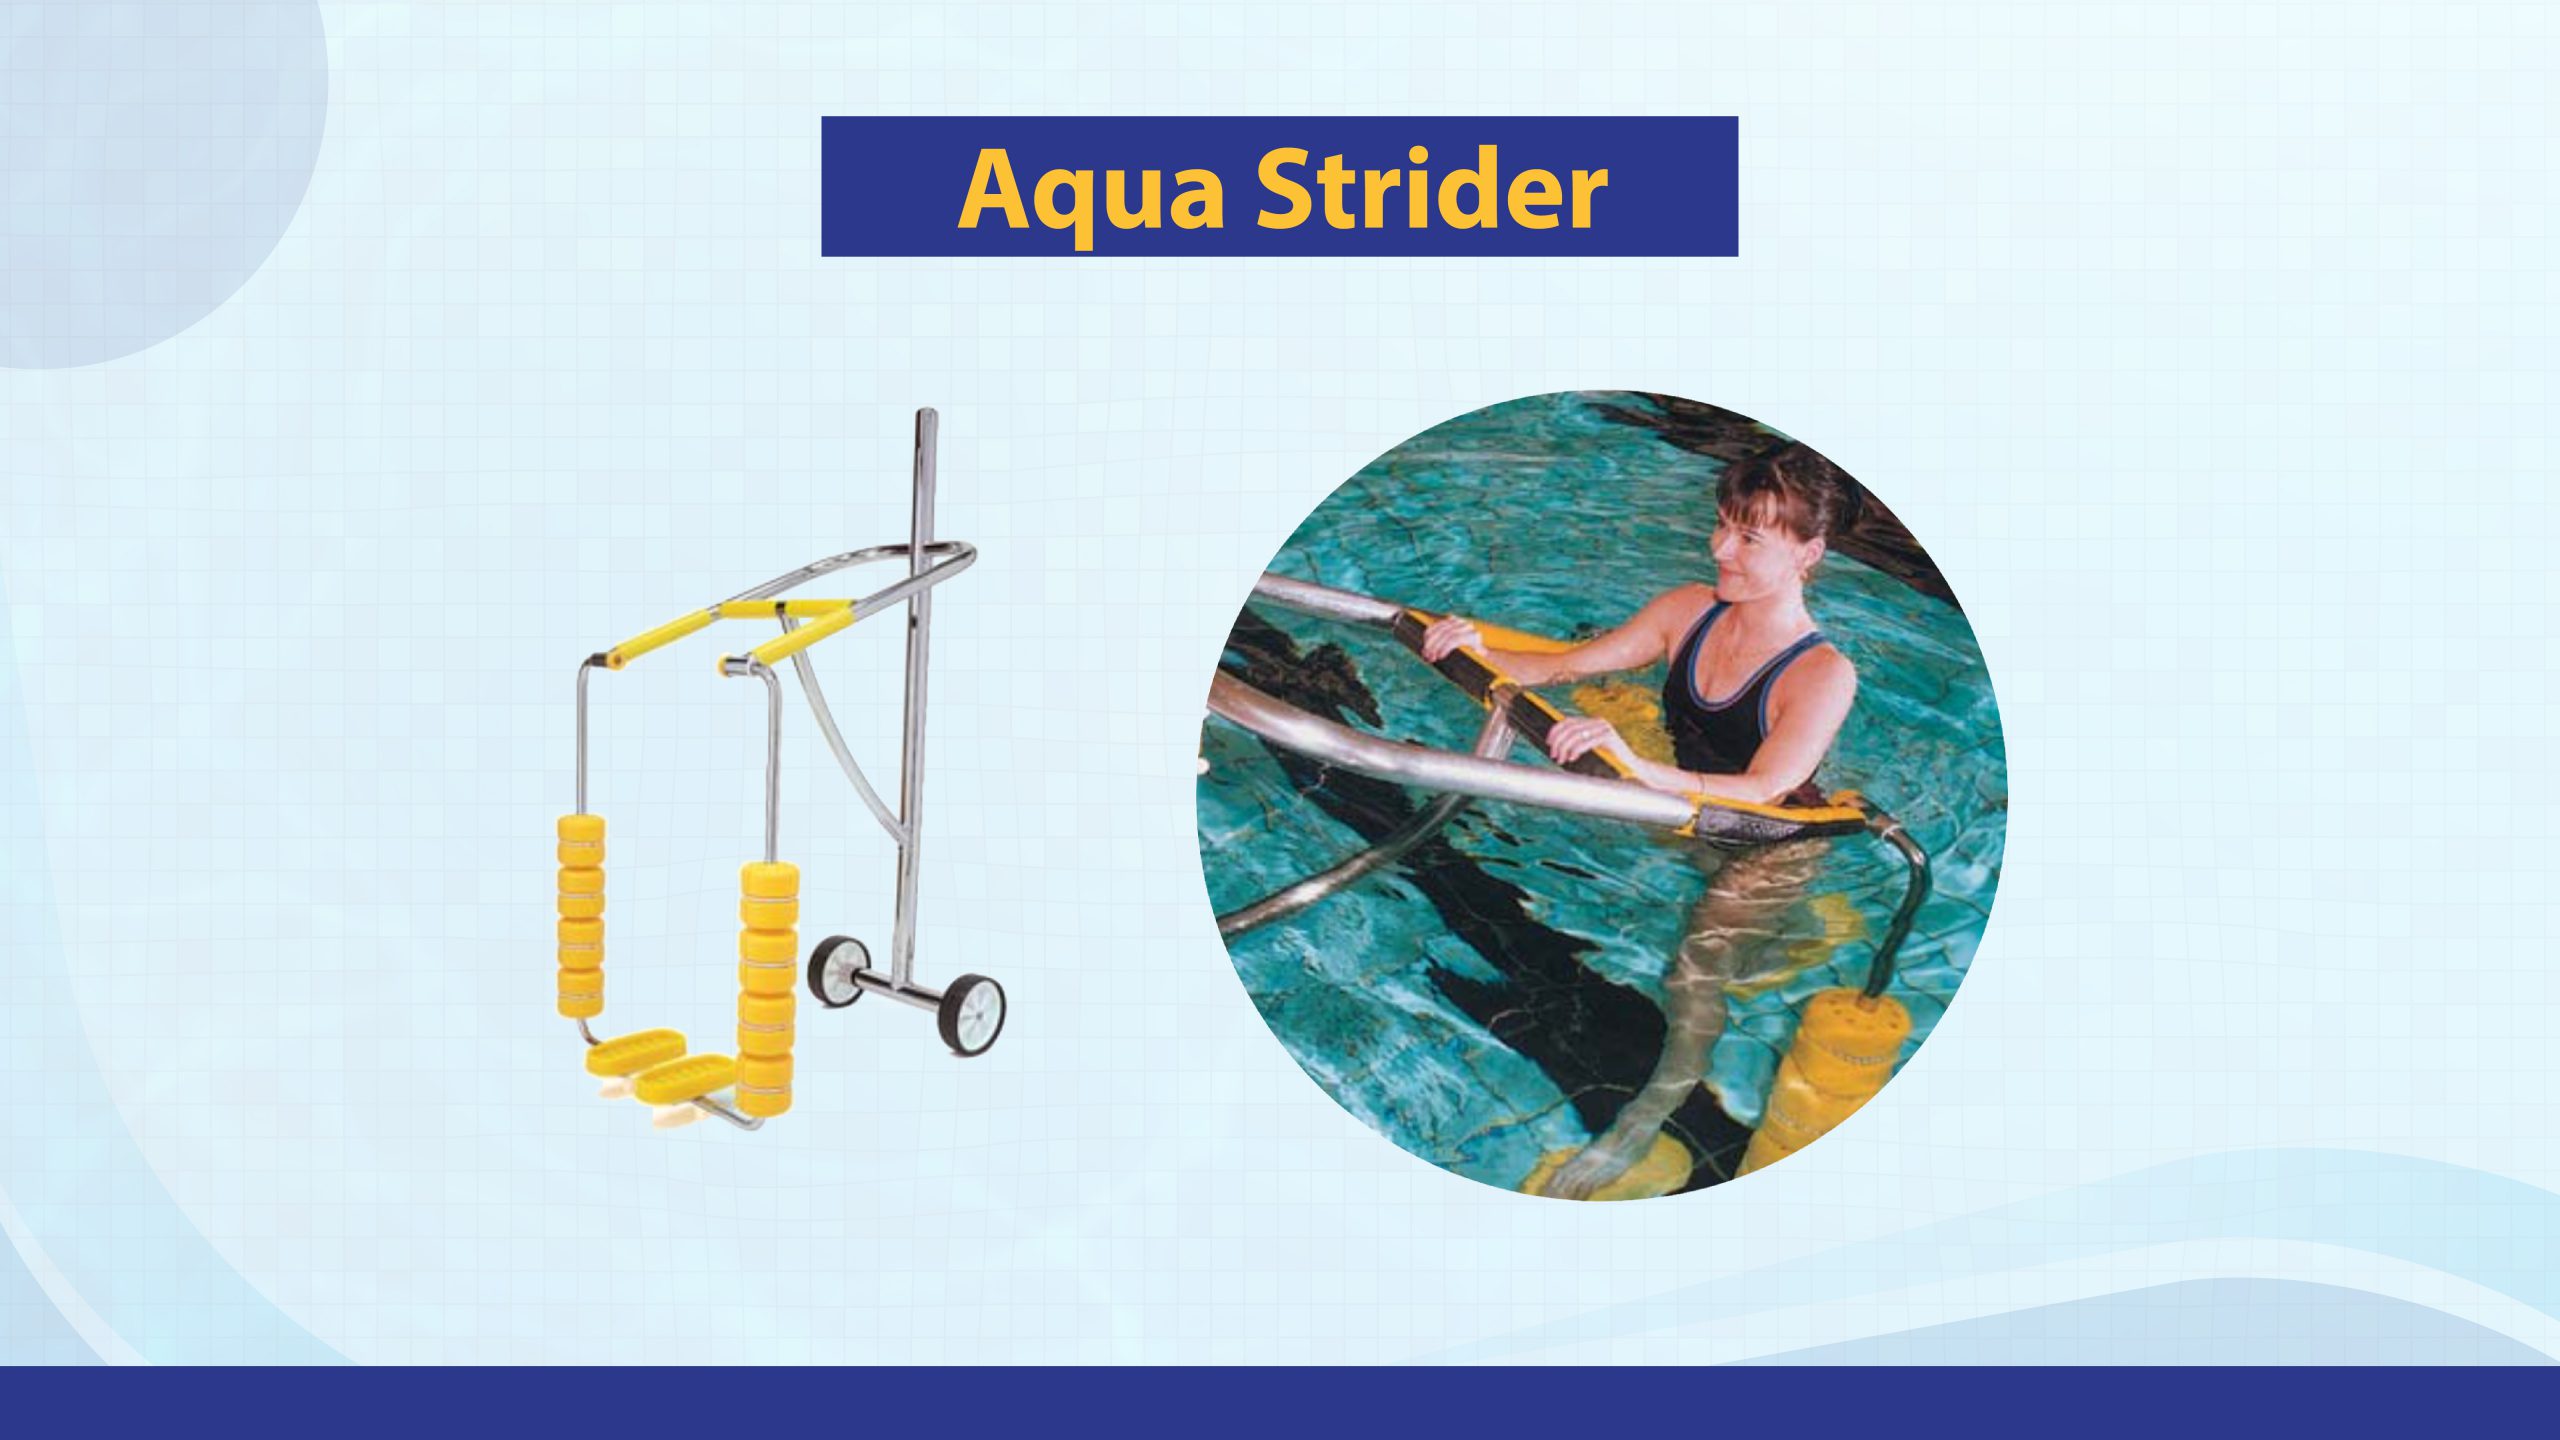 AquaStrider